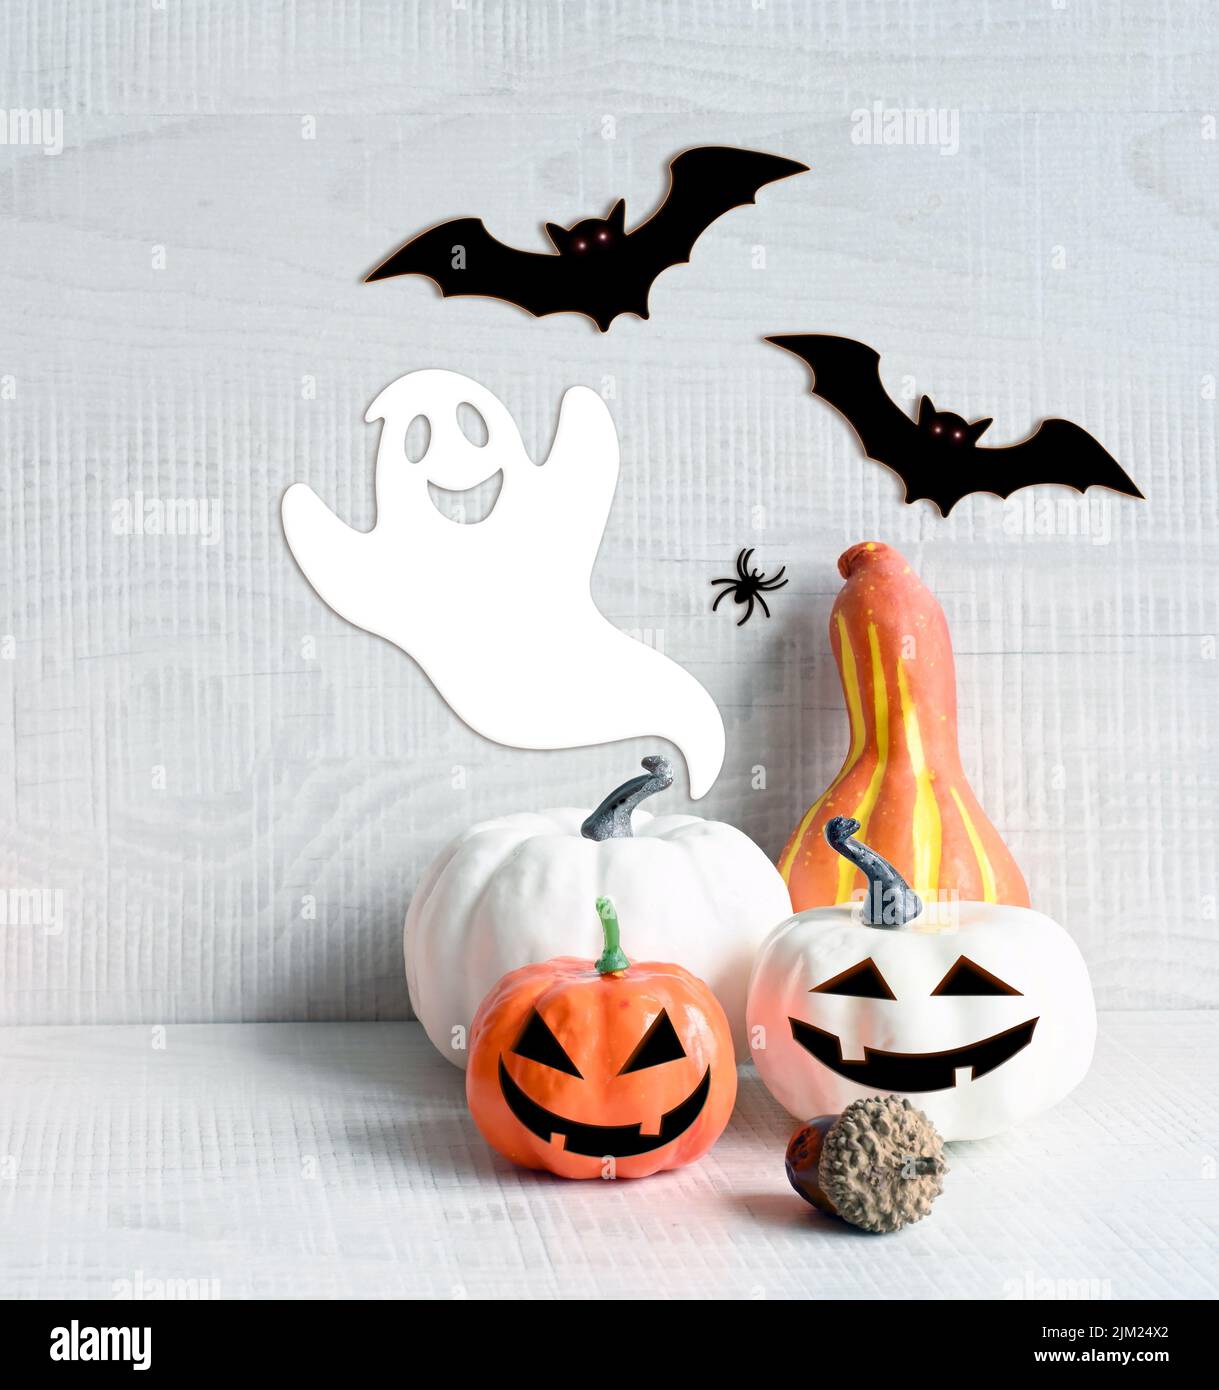 Decoraciones de Halloween sobre fondo gris pastel. Concepto de Halloween. Calabaza, araña, murciélago y fantasma. Foto de stock